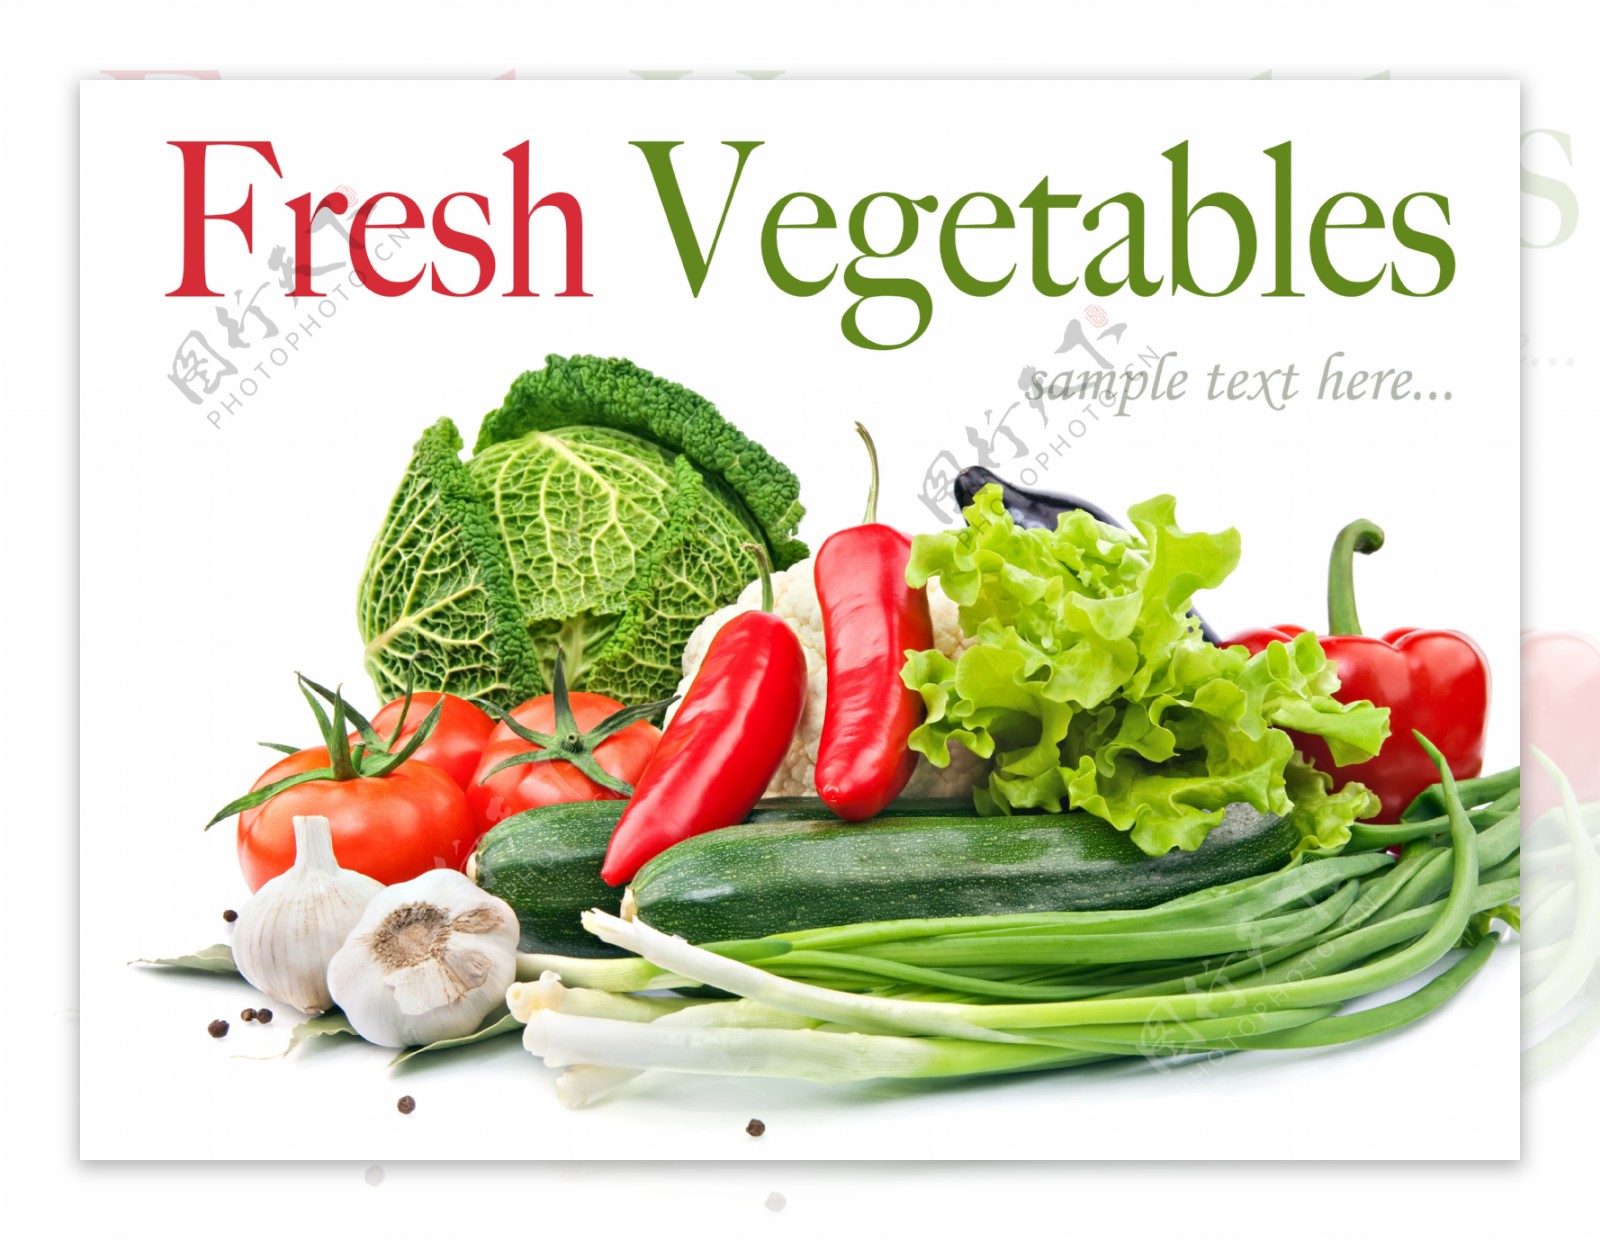 各种蔬菜图片